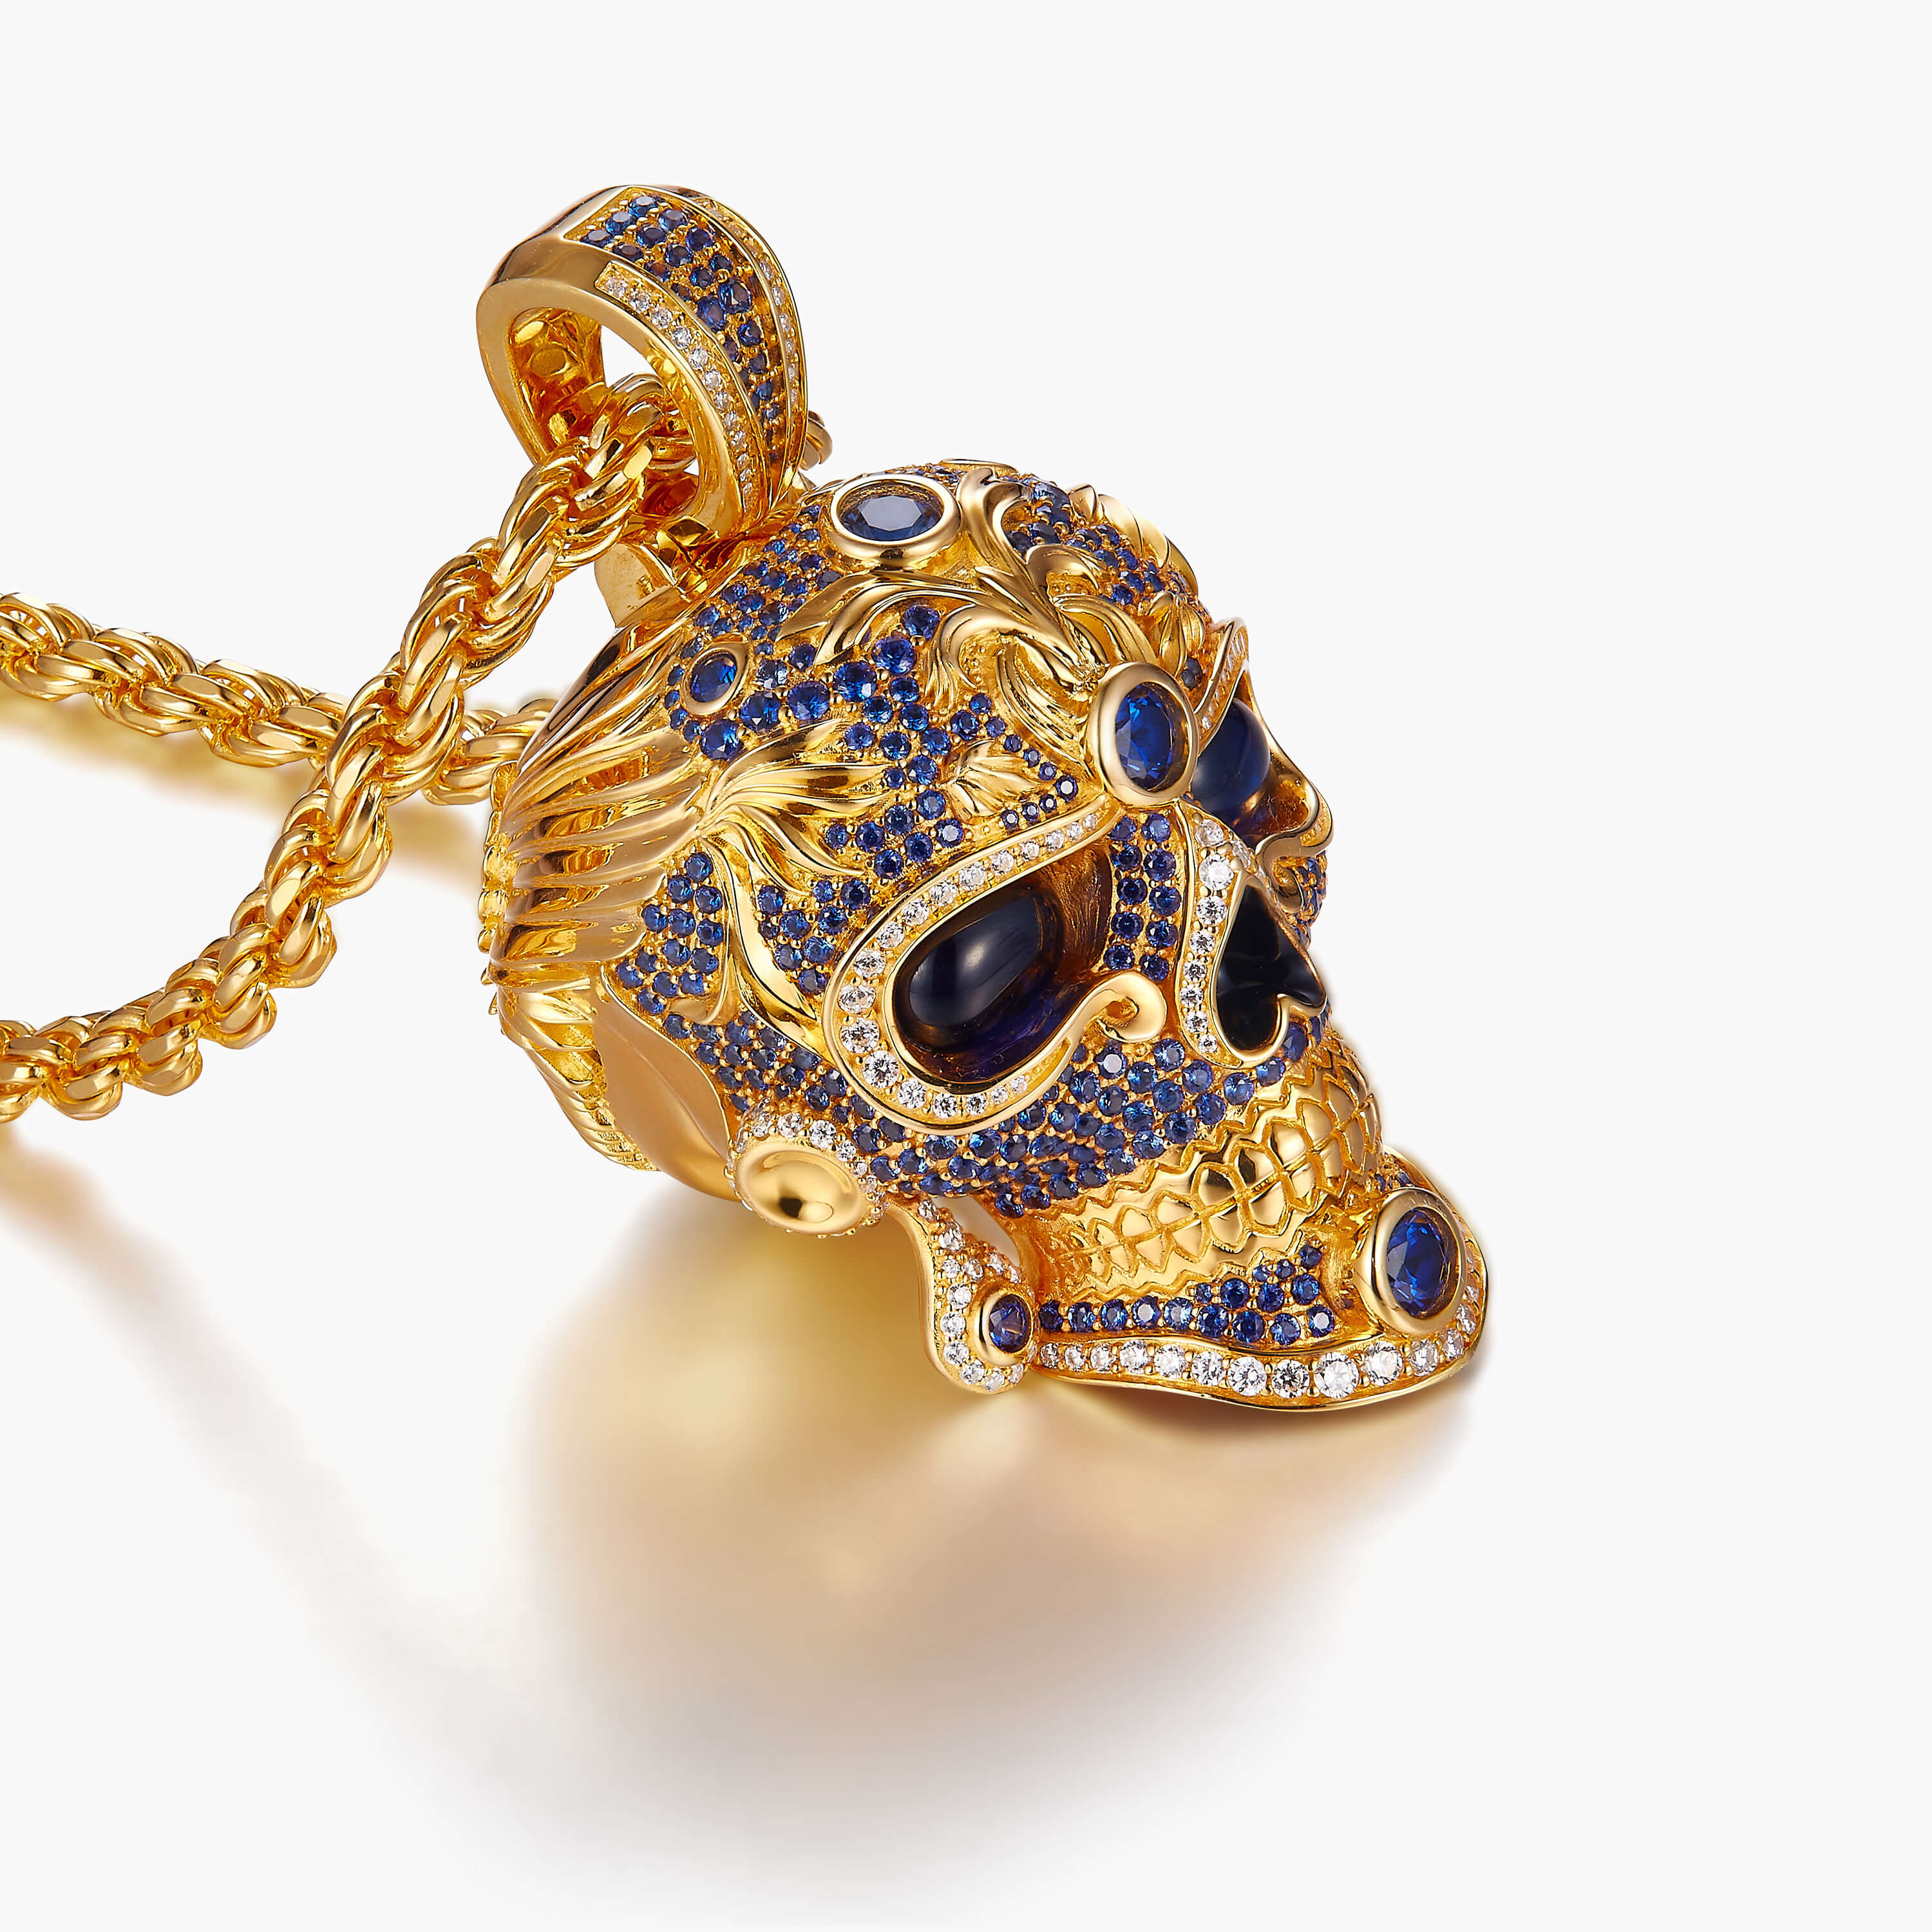 Japanese samurai gold skull skull necklace men gold skull necklace pirate necklaces demon necklace demon necklace for men skull king necklace Sapphire skull for men -lawzskull